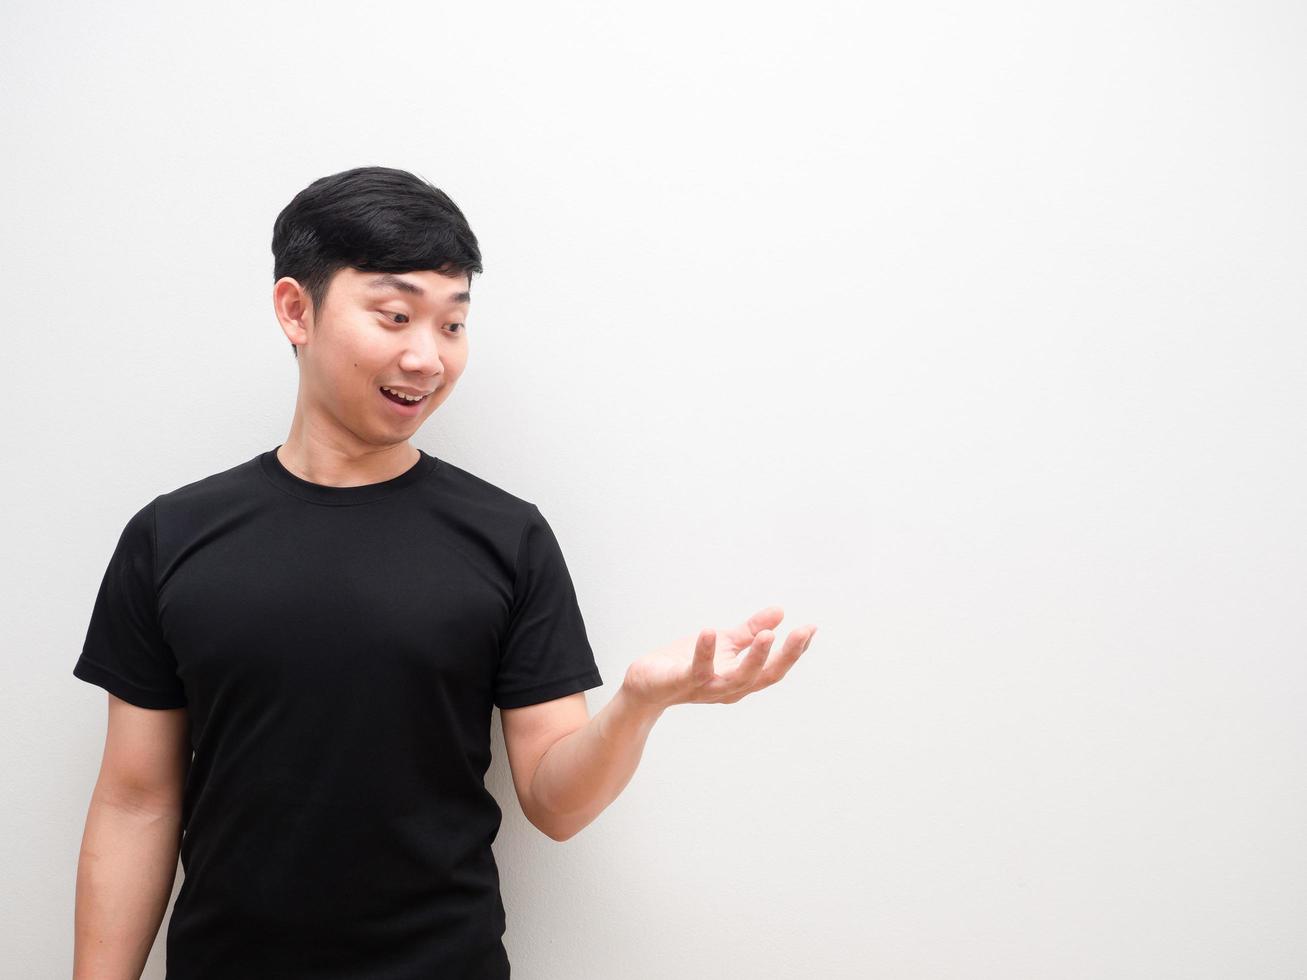 homme asiatique regarde la main gauche avec un sourire heureux sur l'espace de fond blanc photo